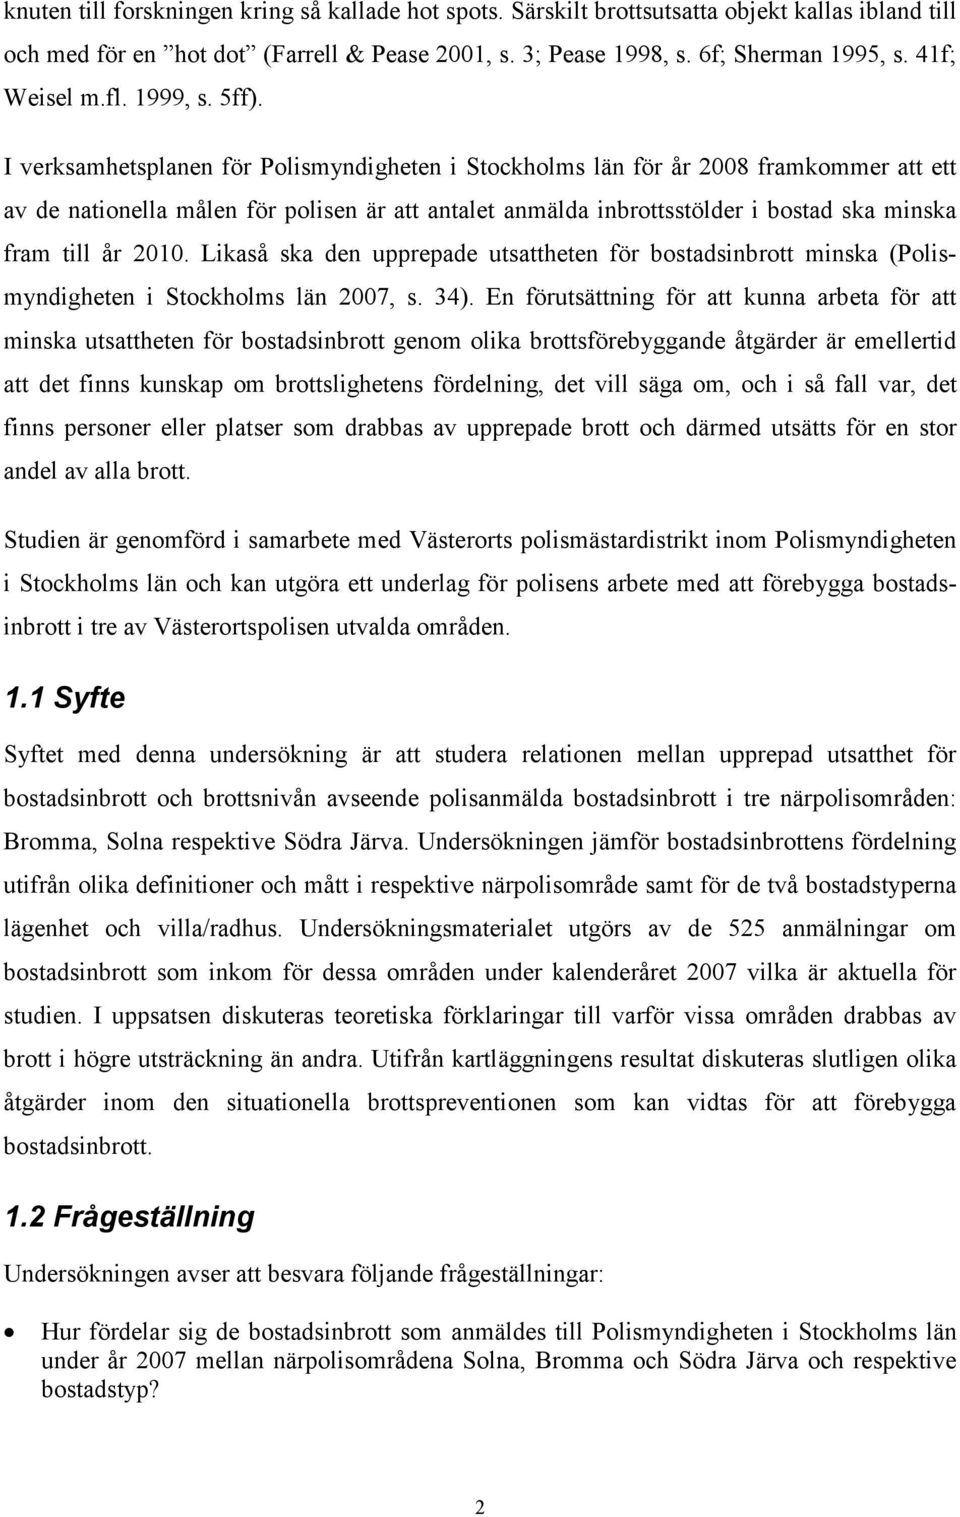 I verksamhetsplanen för Polismyndigheten i Stockholms län för år 2008 framkommer att ett av de nationella målen för polisen är att antalet anmälda inbrottsstölder i bostad ska minska fram till år